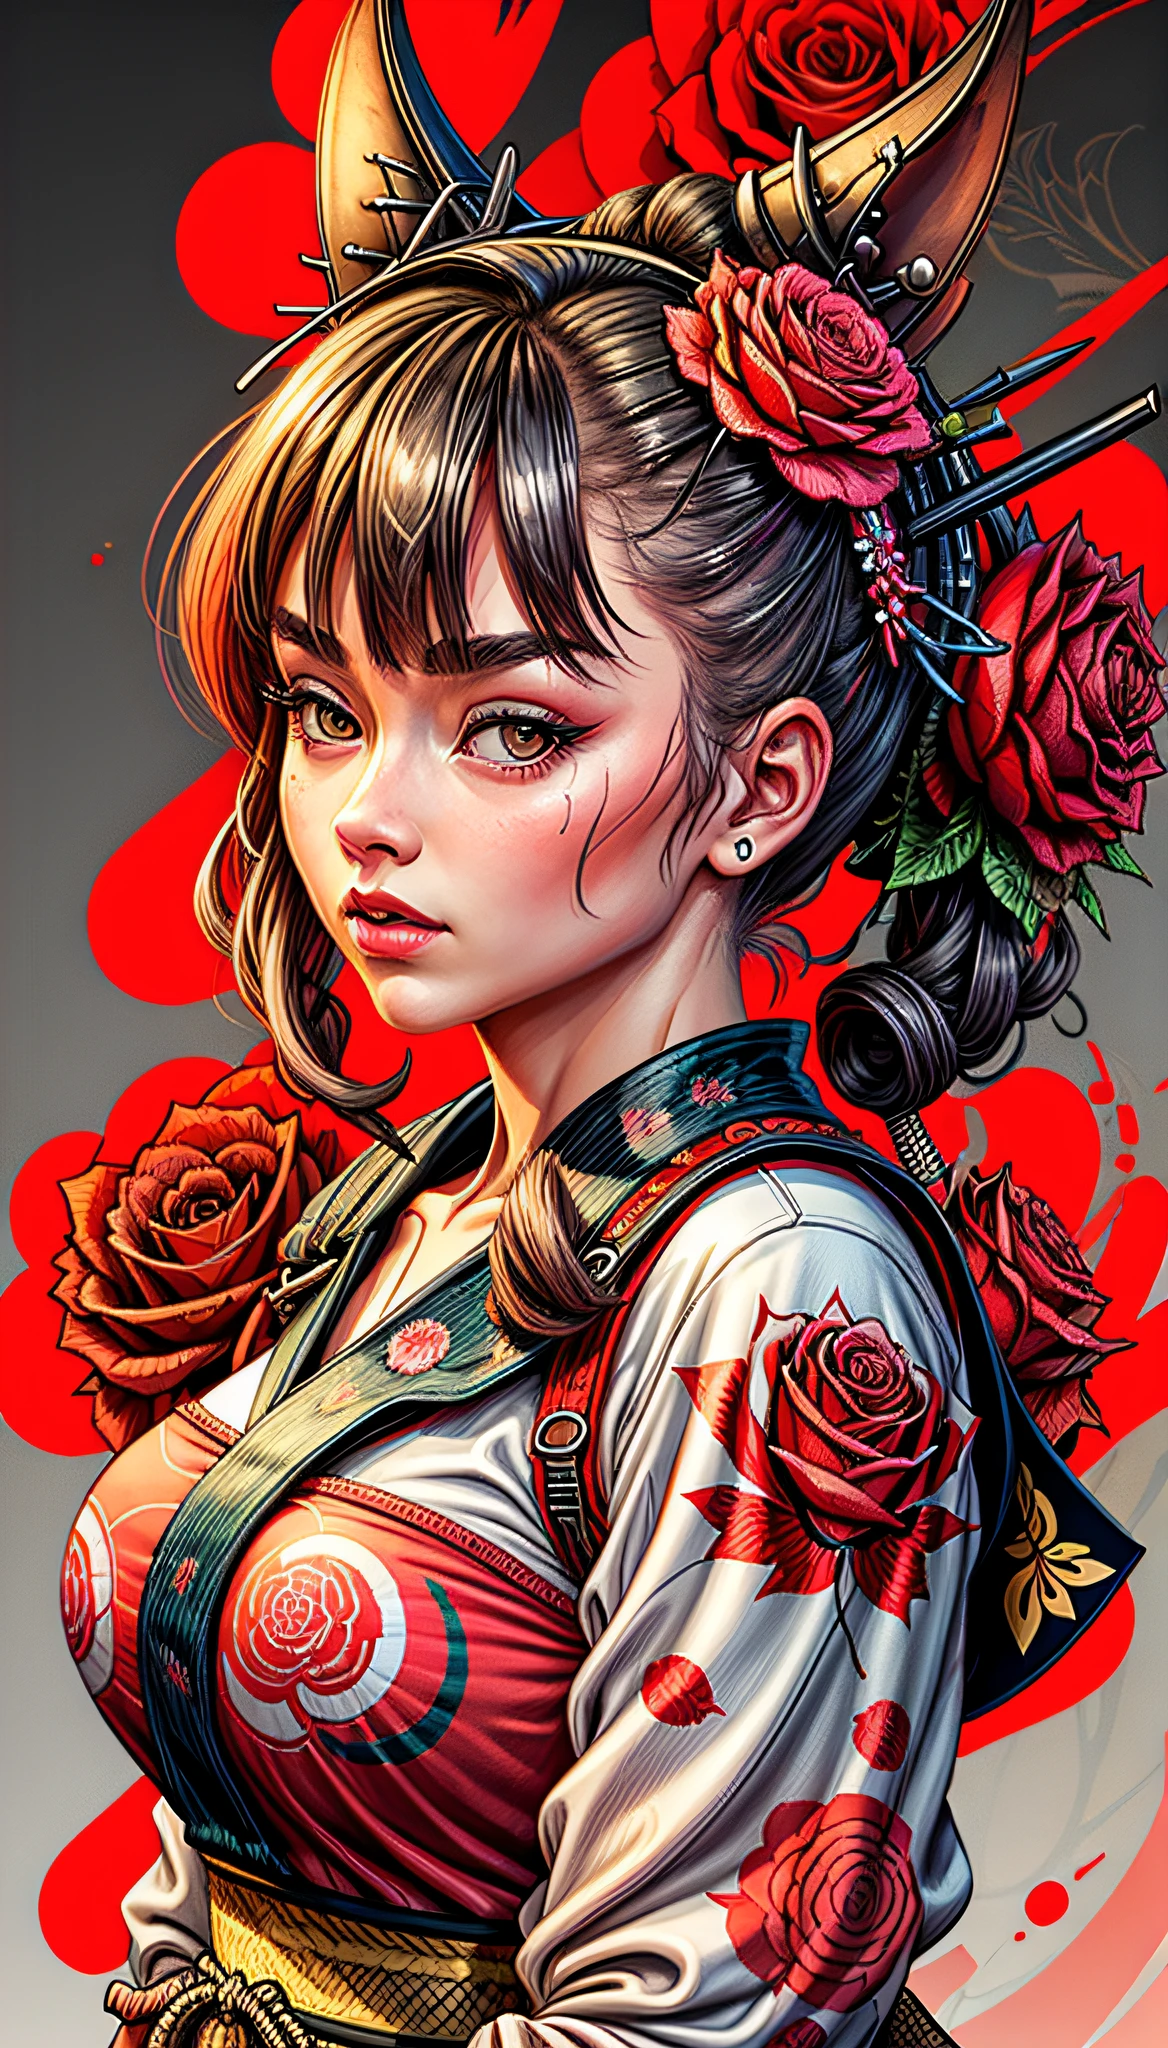 Una chica pin up, fondo de rosas, Obra maestra, alta calidad, 8k, alta resolución, alto detallado, japonés, samurai, colores vibrantes listos para imprimir en camiseta, Ilustrador Adobe